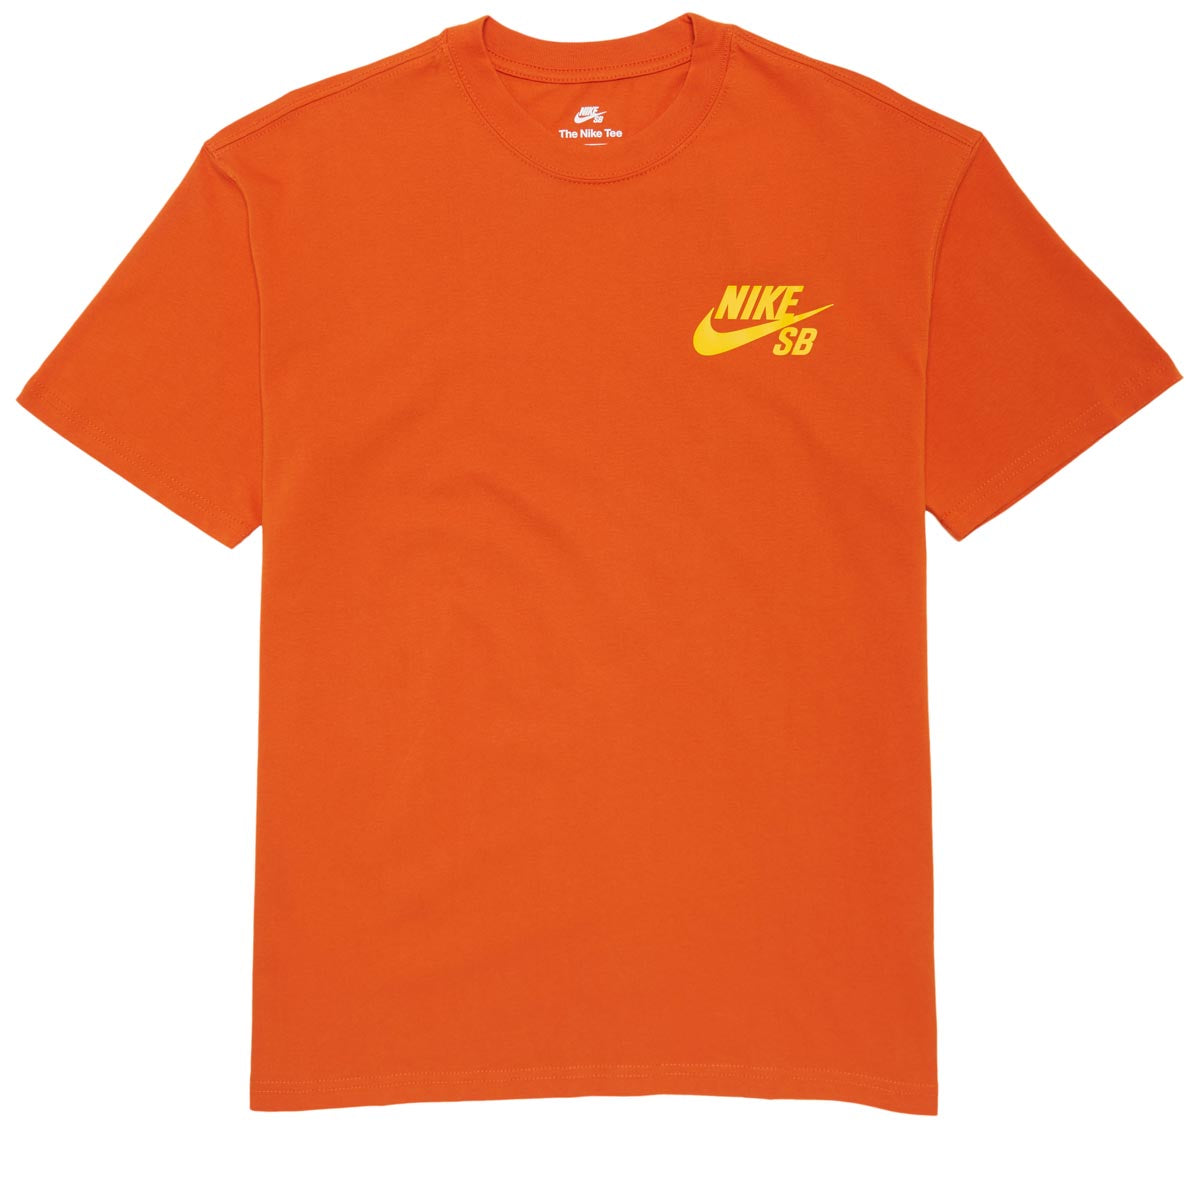 Nike SB New Logo T-Shirt - Campfire Orange image 1